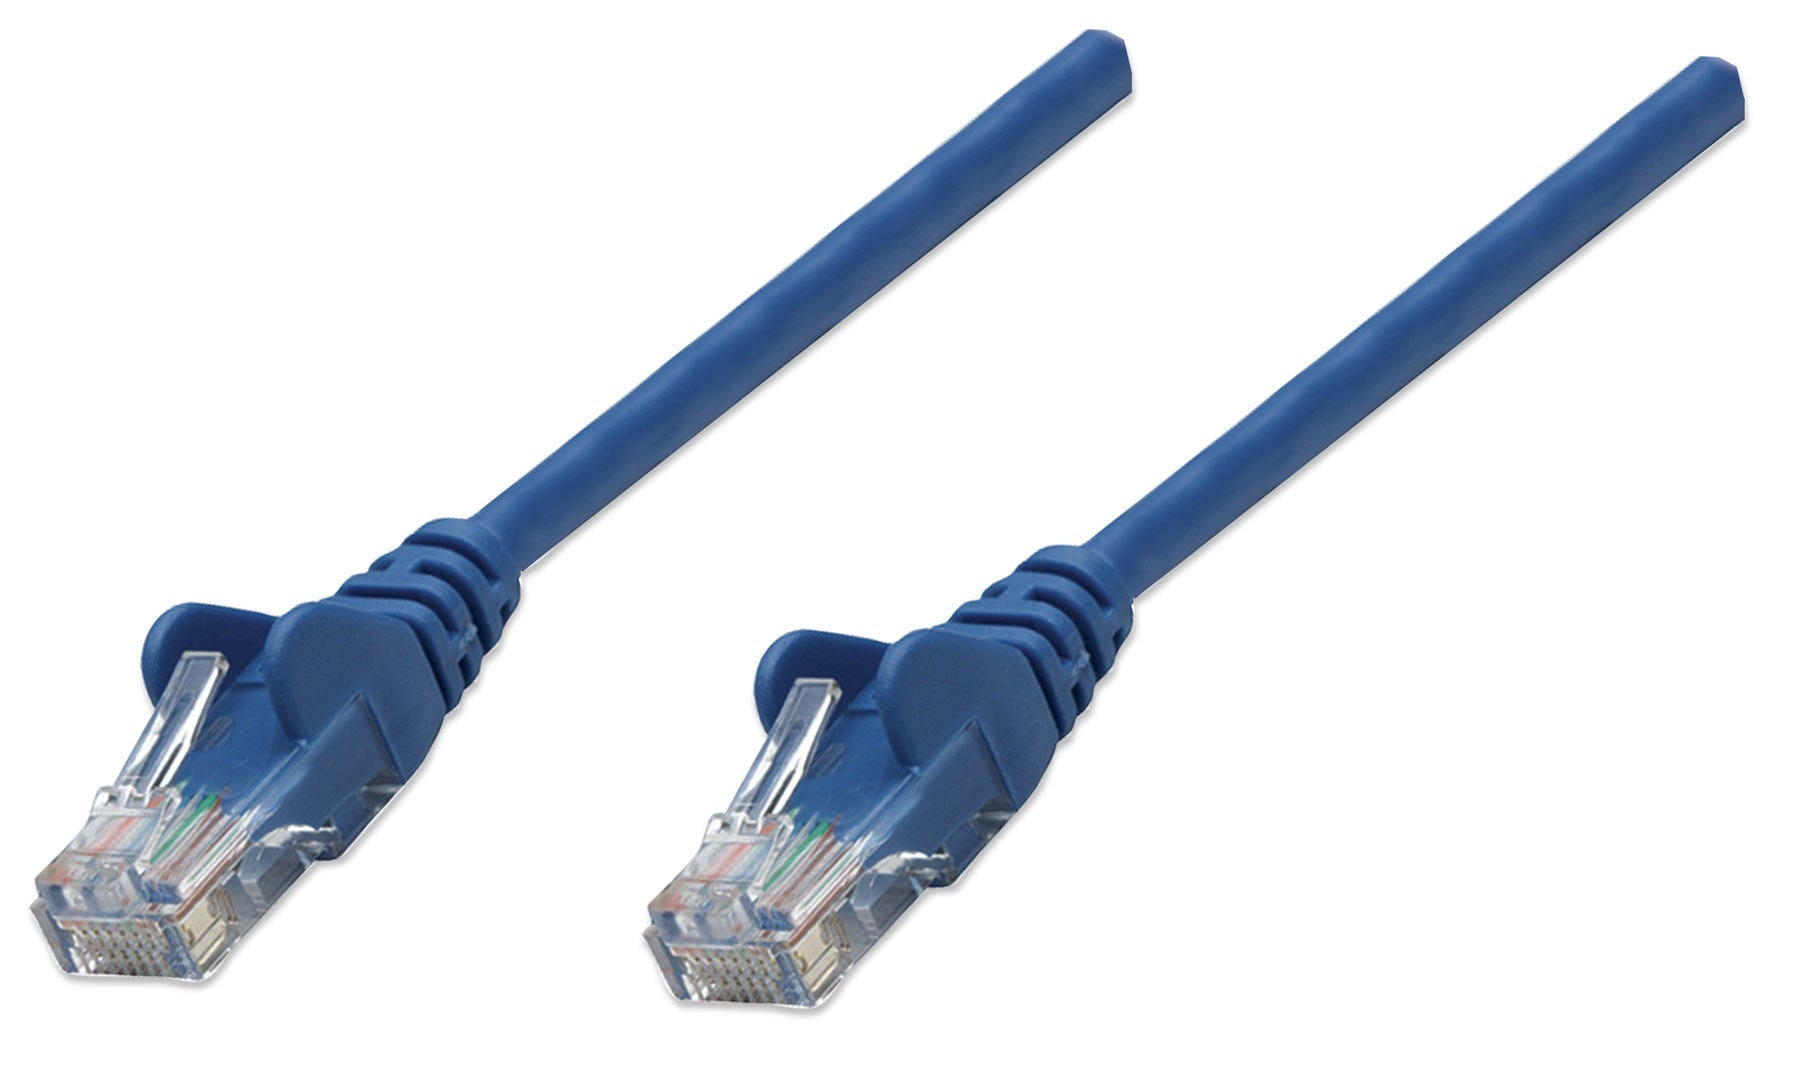 Cable De Red Intellinet 319829 Patch 4.2M Cat 5E Color Azul.